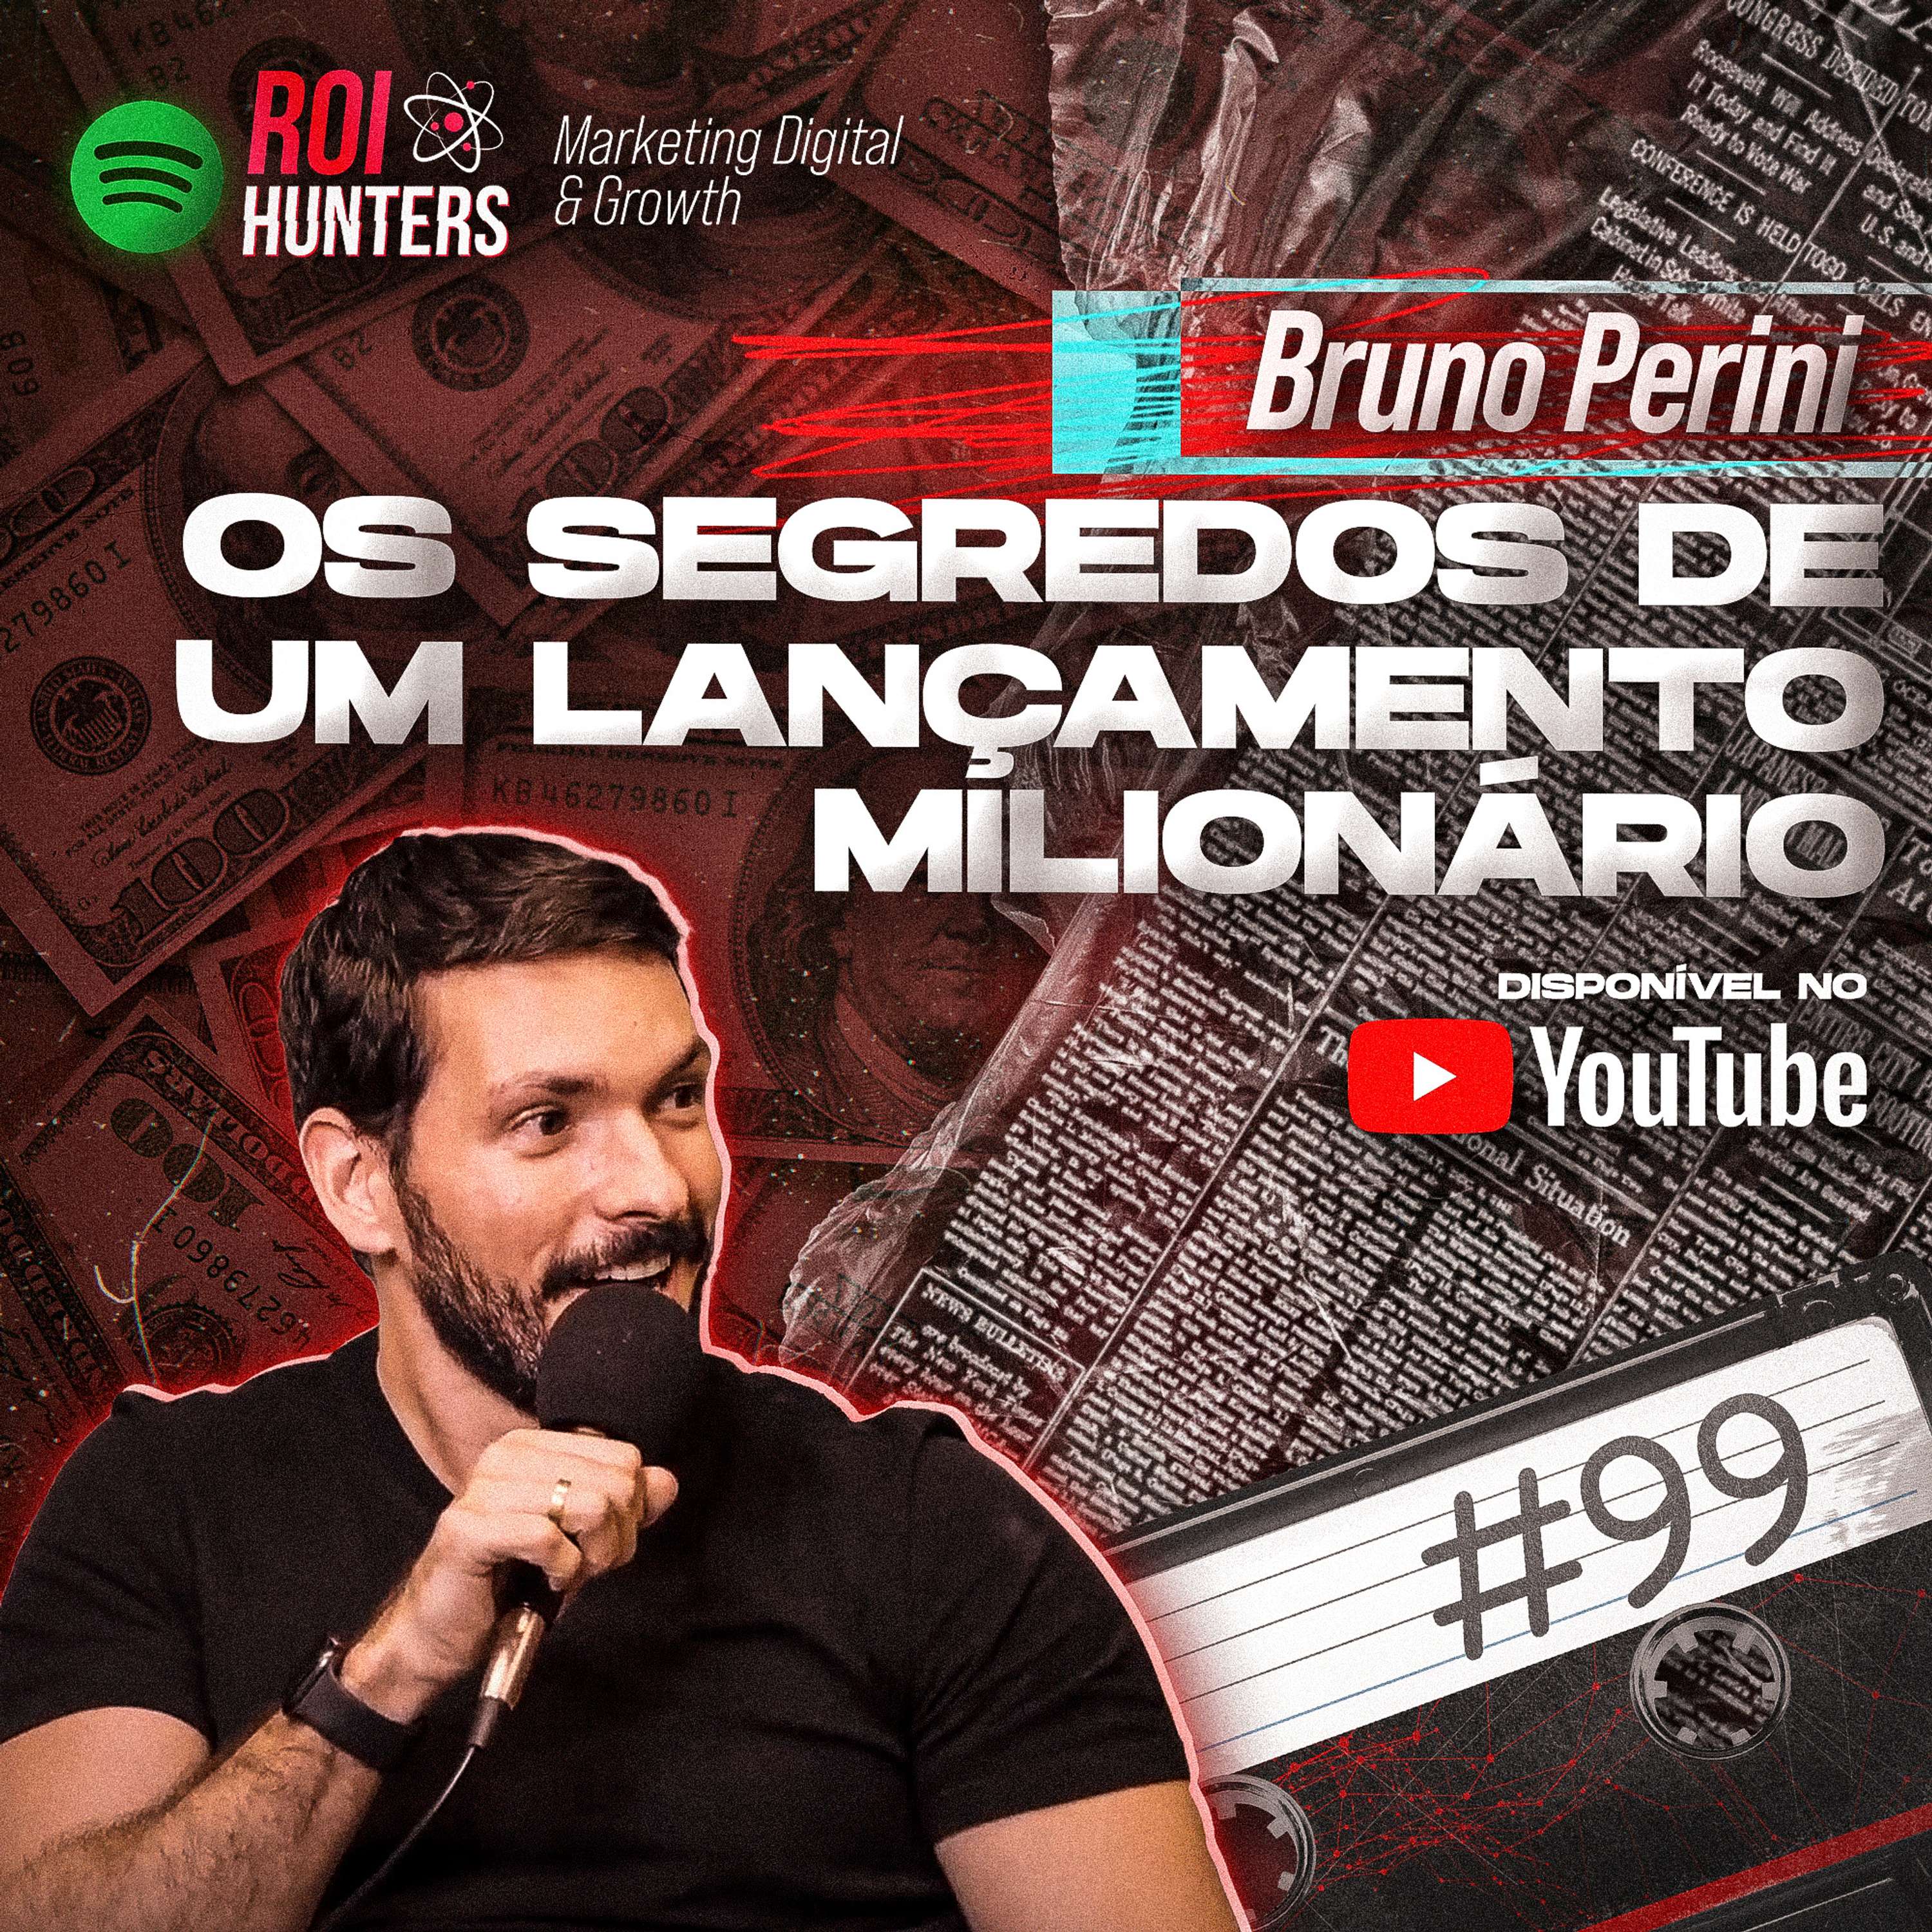 Bruno Perini revela os segredos de um lançamento milionário | ROI HUNTERS #99